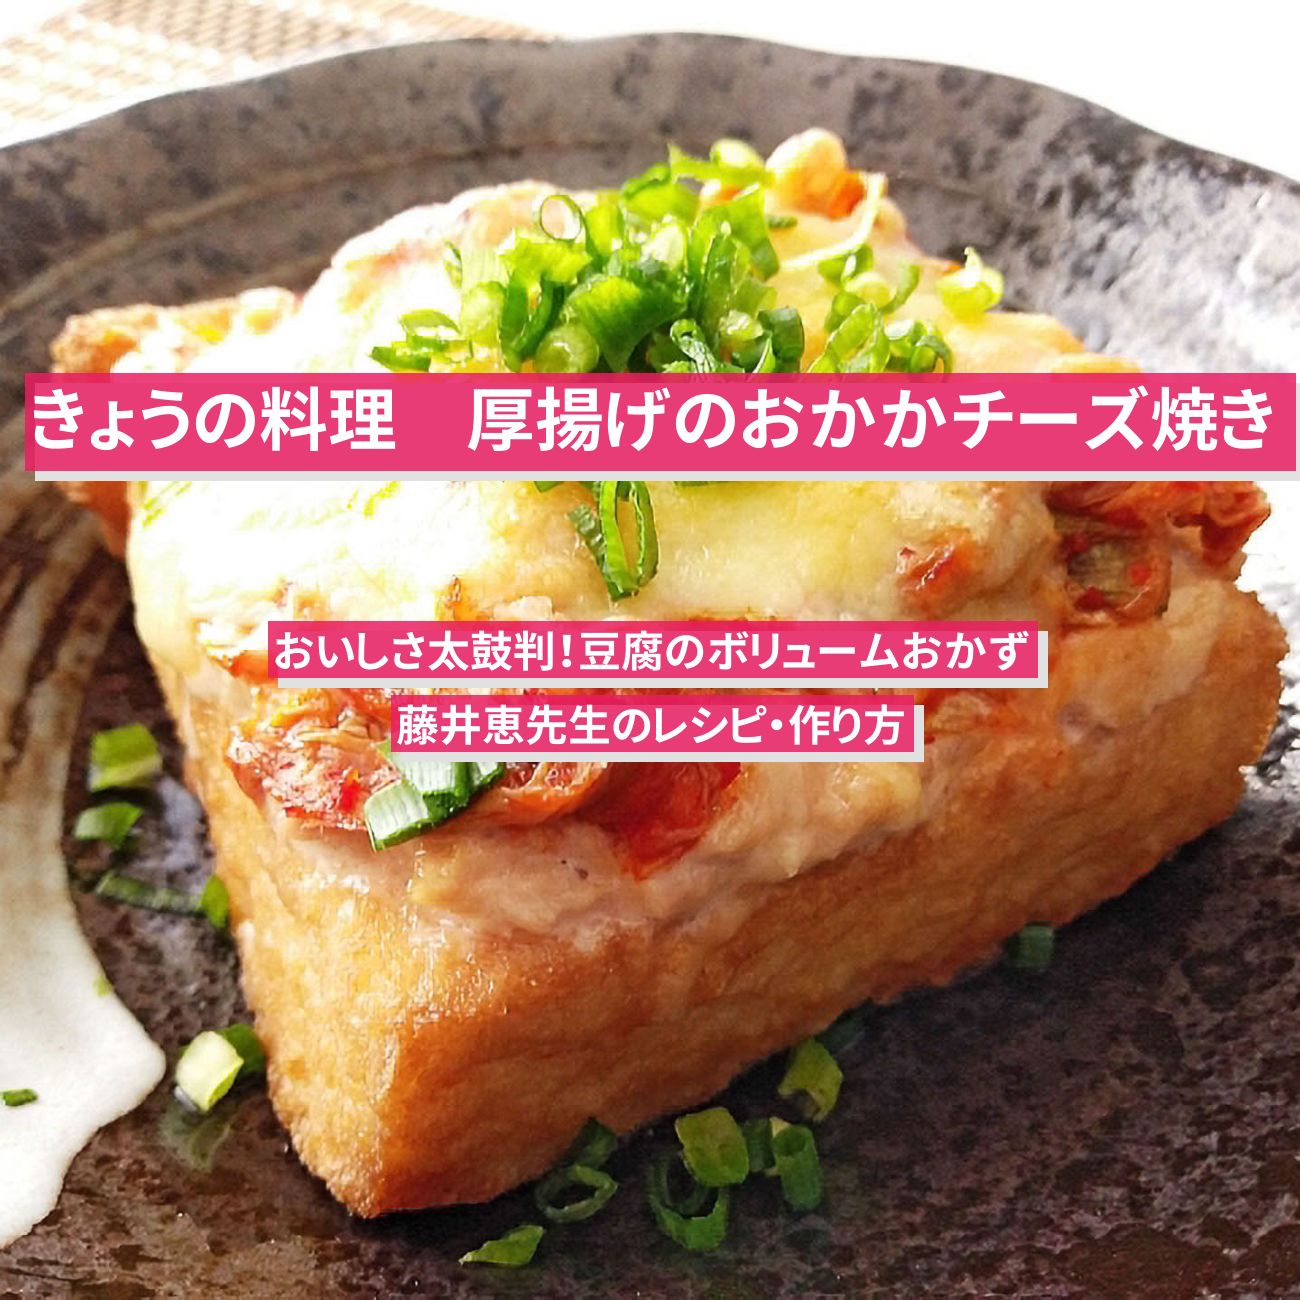 【きょうの料理】『厚揚げのおかかチーズ焼き』藤井恵先生のレシピ・作り方